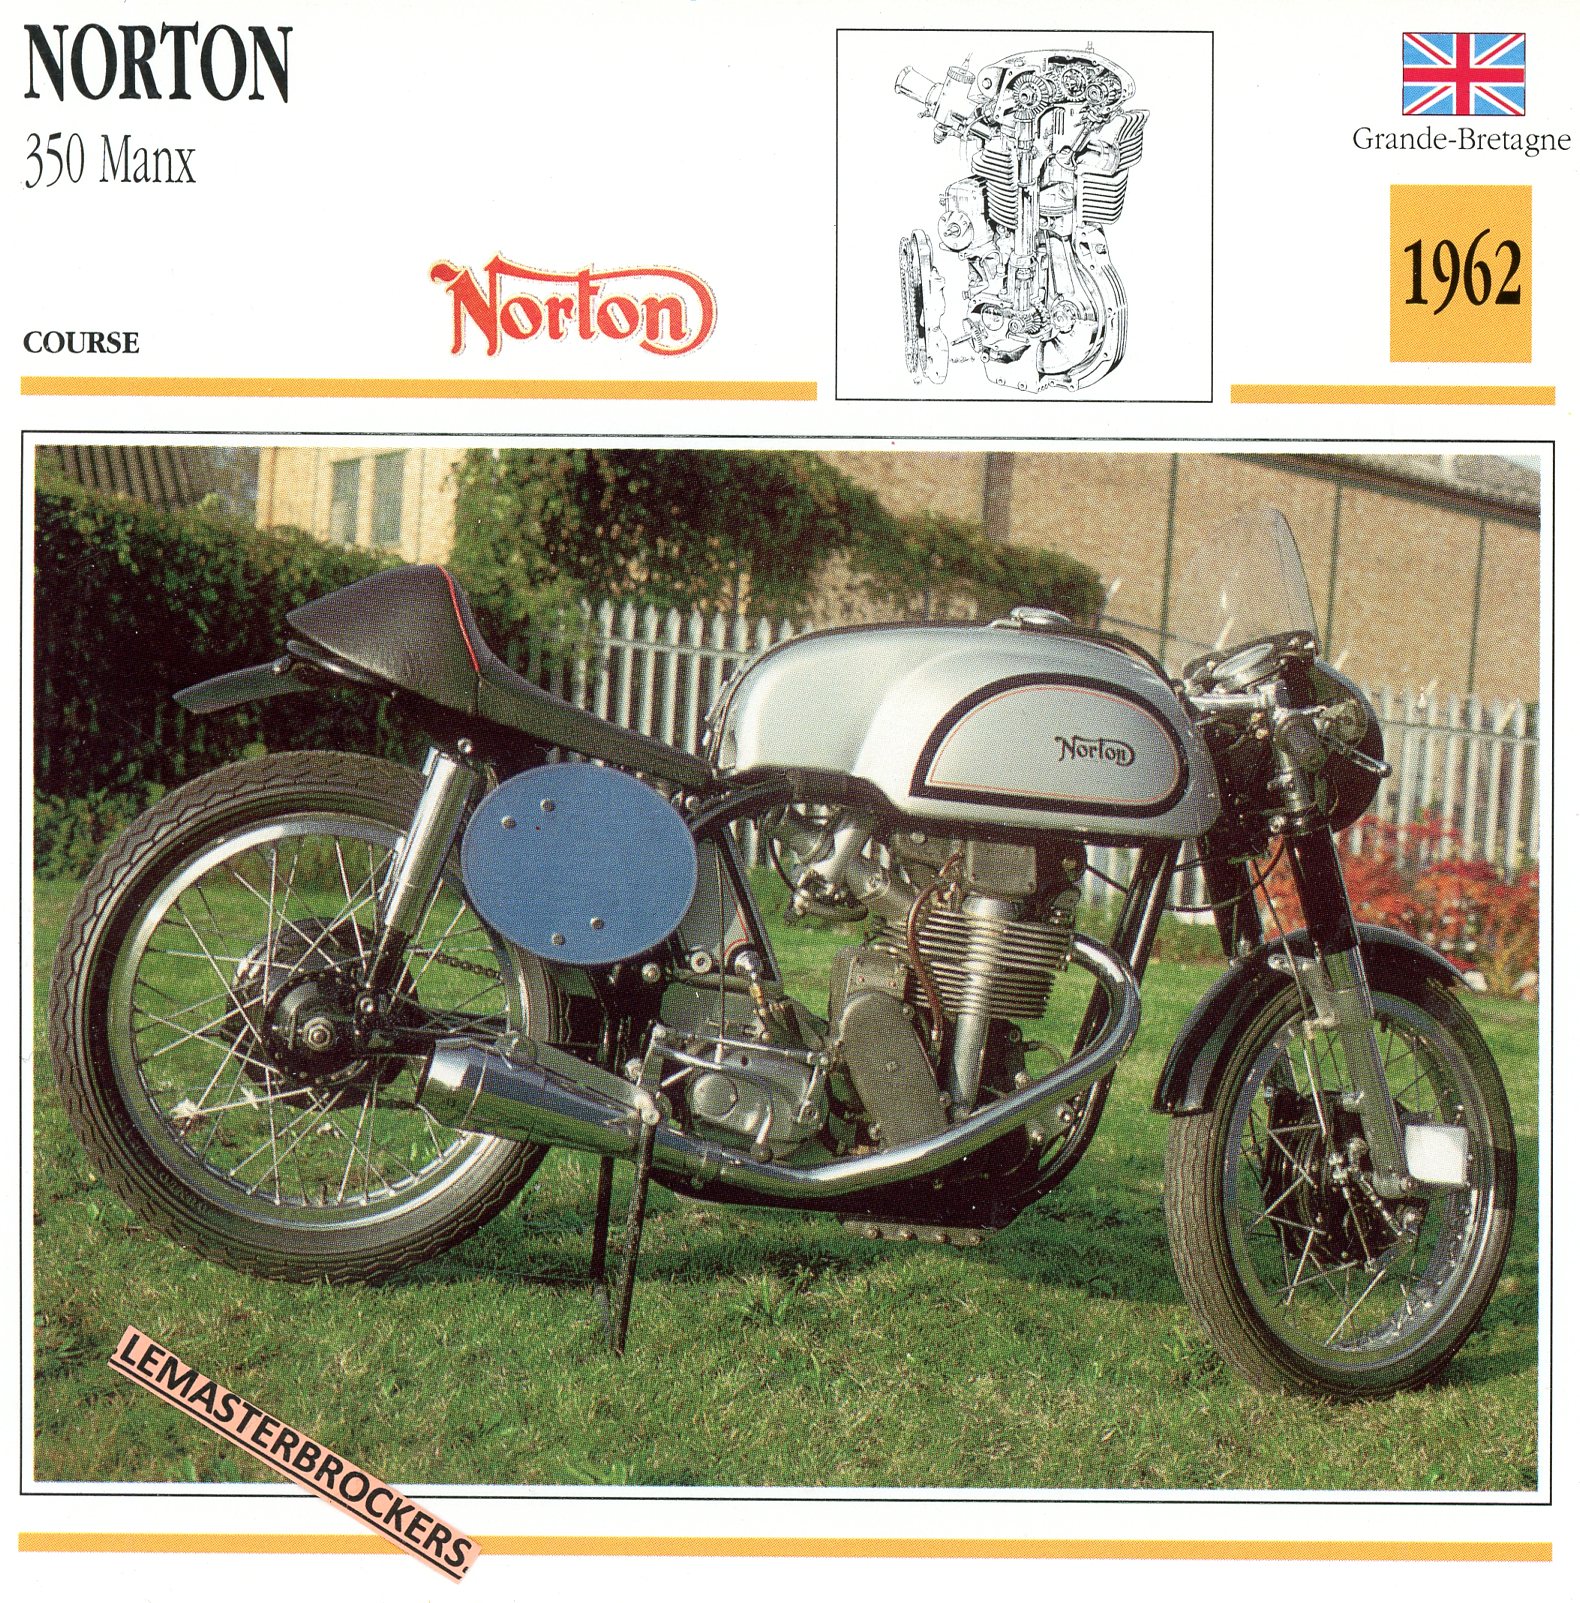 NORTON-350-MANX-1962-FICHE-MOTO-ATLAS-lemasterbrockers-CARD-MOTORCYCLE